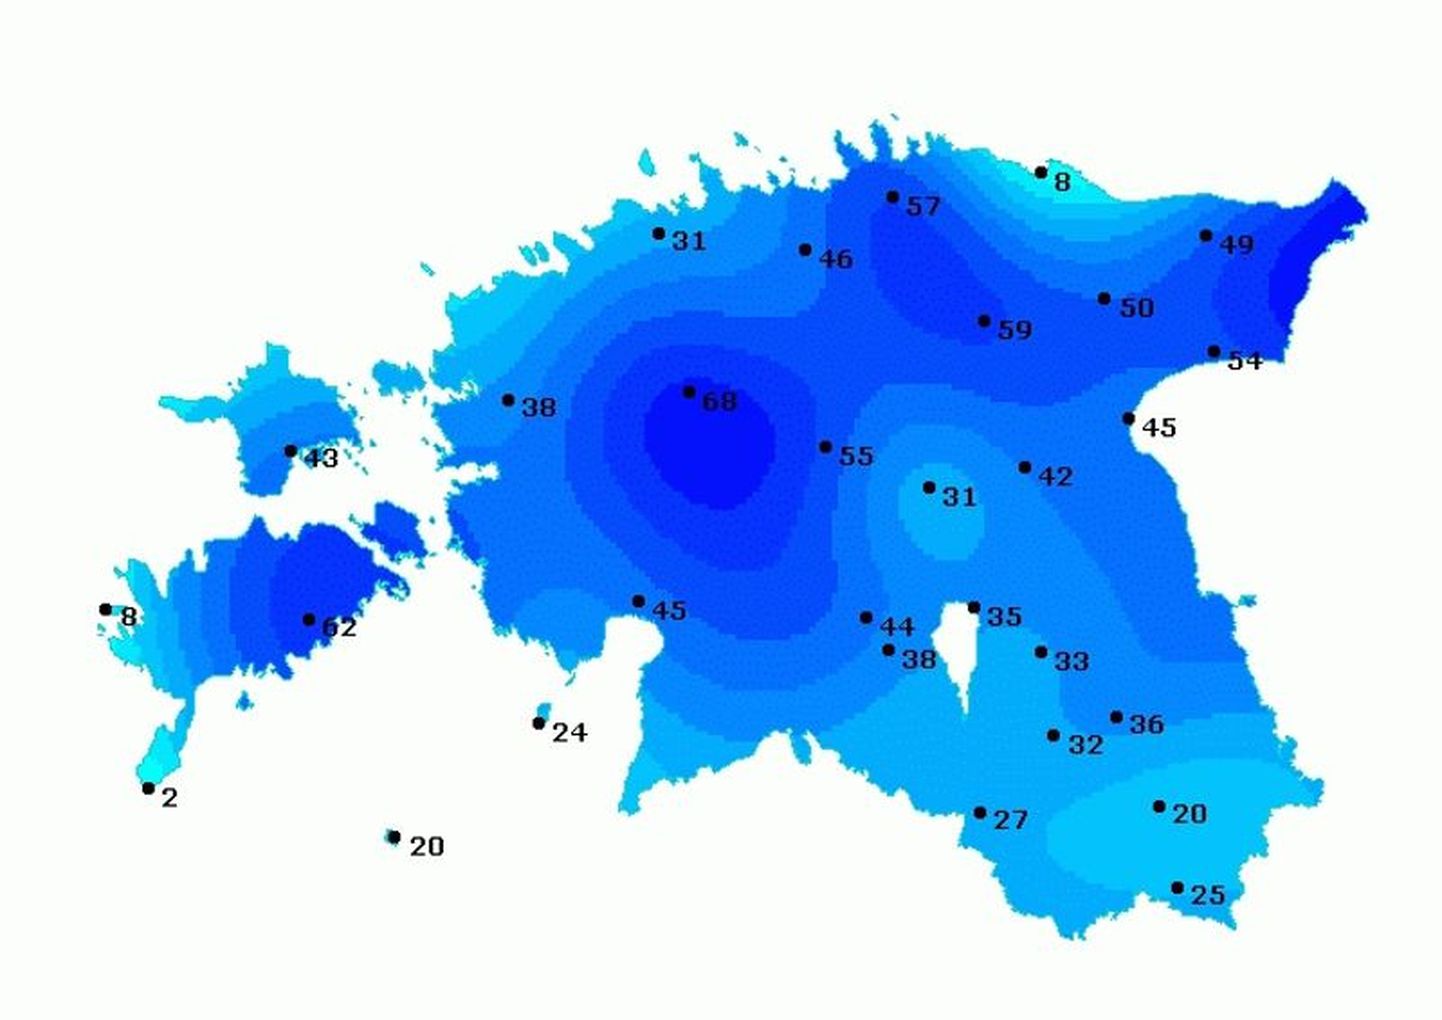 Eesti meteoroloogia ja hüdroloogia instituudi lumekaart 13. detsembri hommikul, mis näitab lumekihi paksust sentimeetrites.